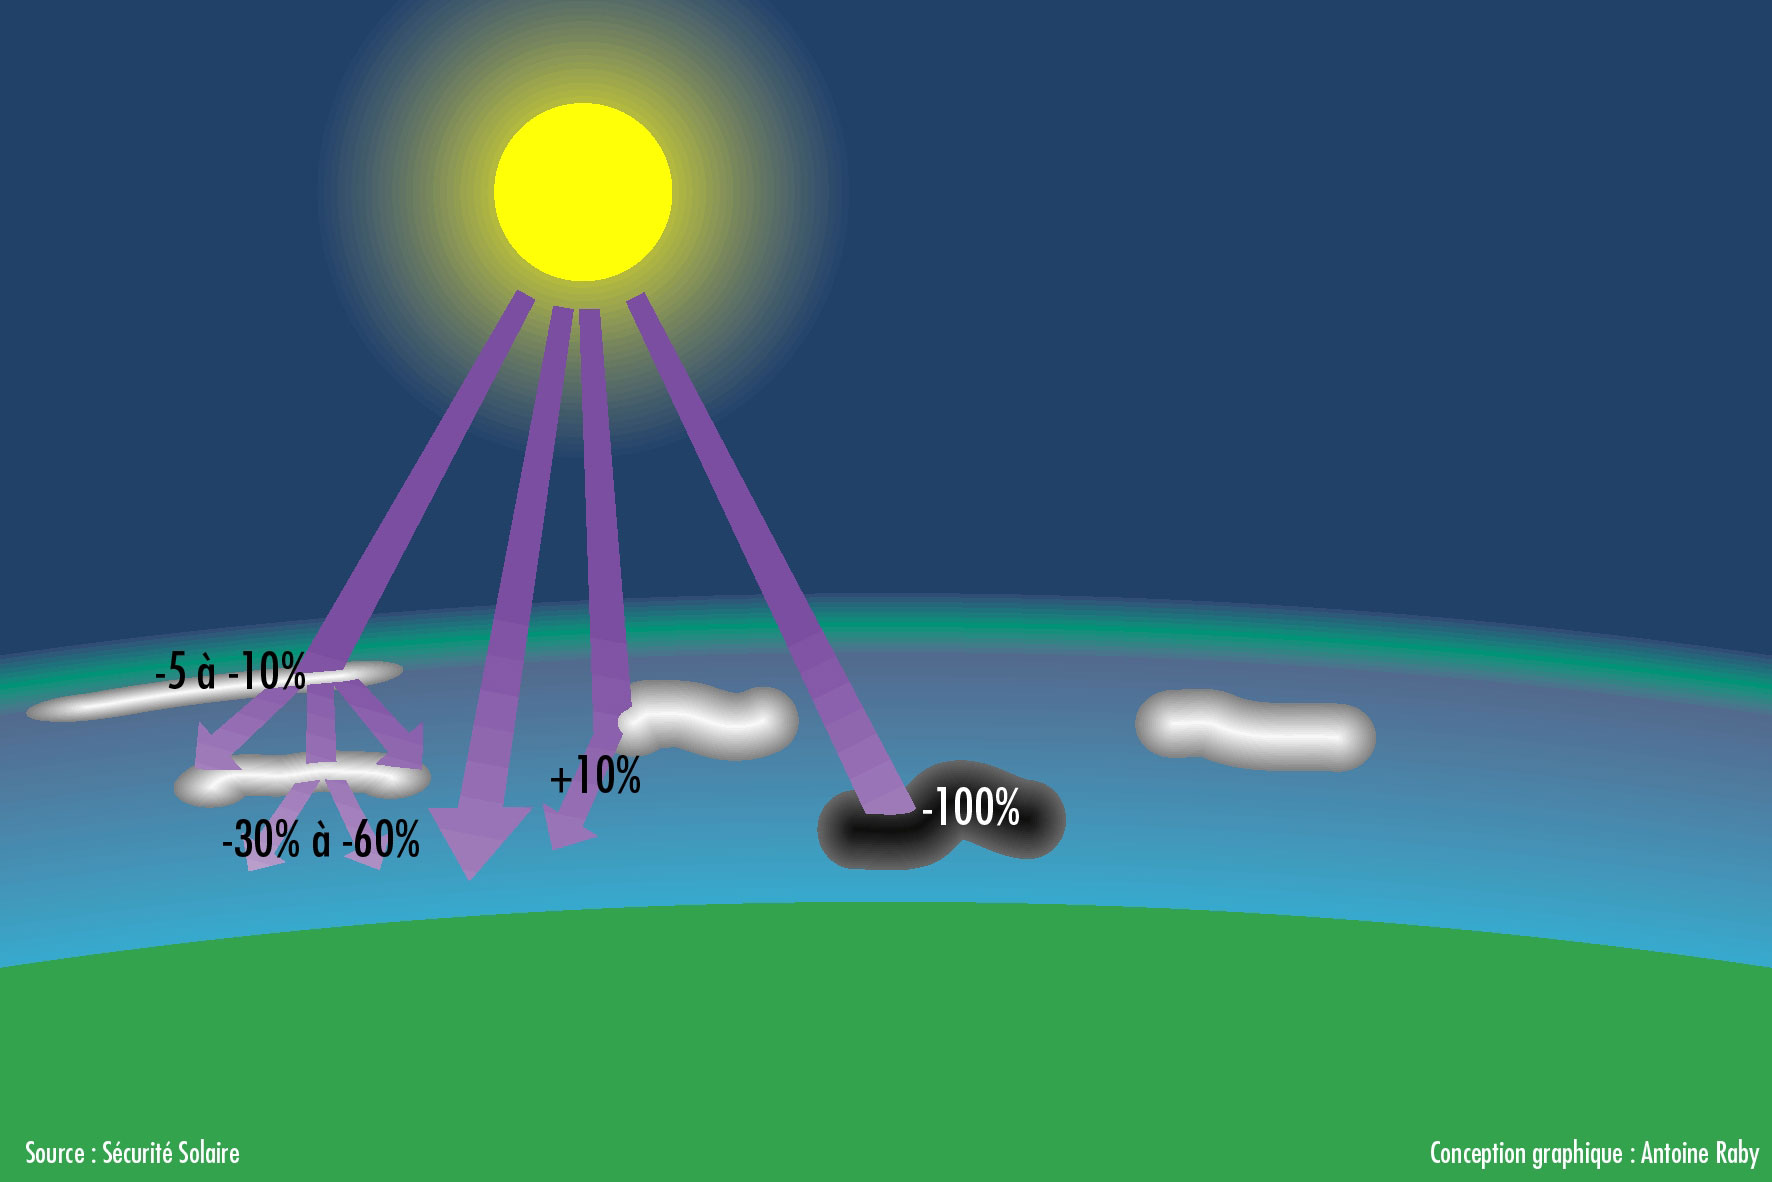 Schéma illustrant les différents types de nuages et leur capacité de filtration.